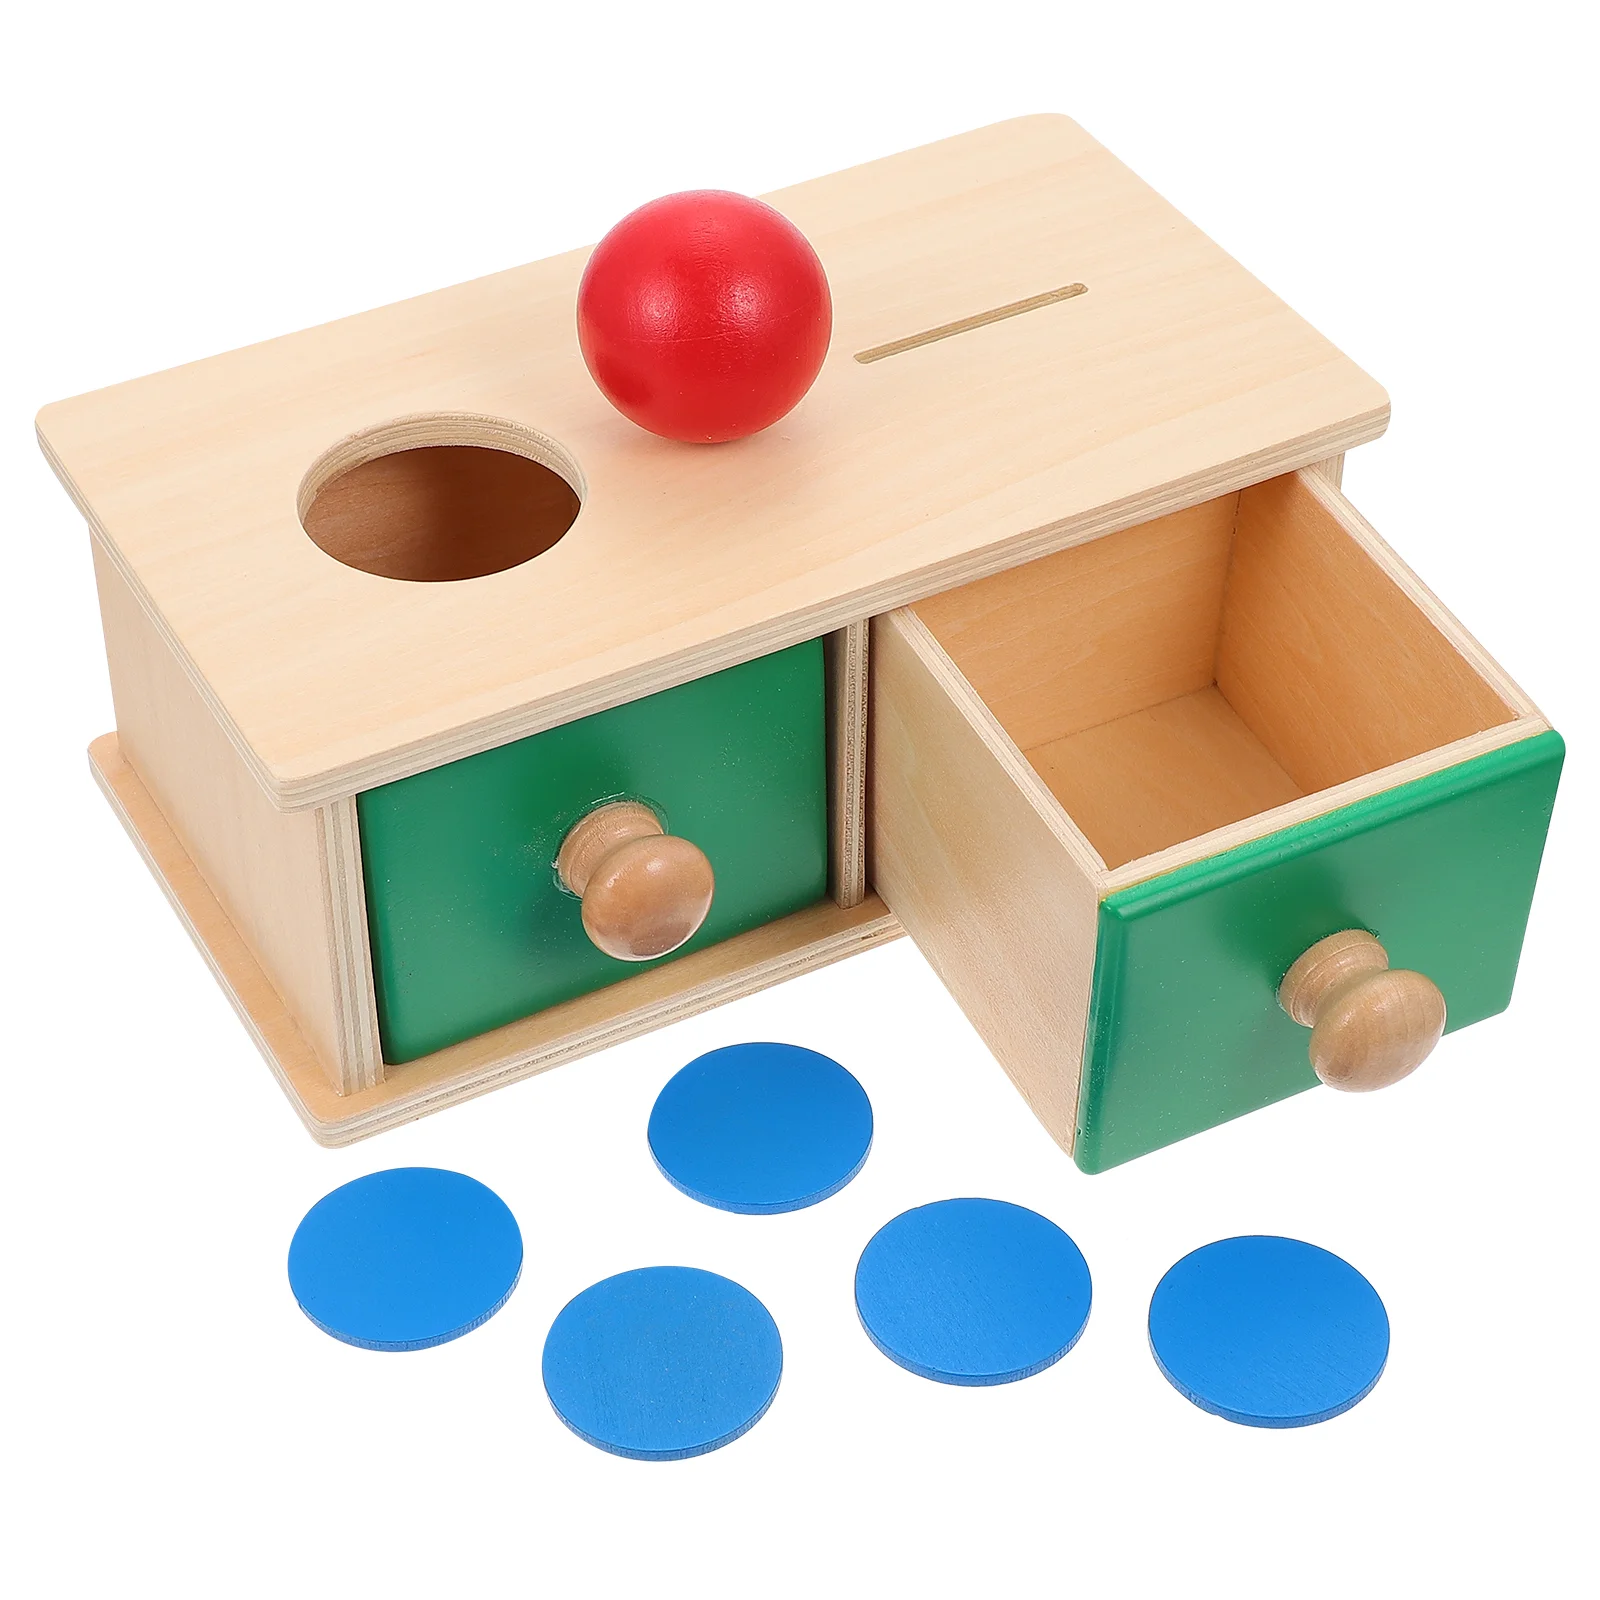 

Ящик коробка для когнитивных игрушек, интеллектуальные игрушки-головоломки, деревянные игровые приборы Монтессори, обучающие материалы для детей, обучающий материал